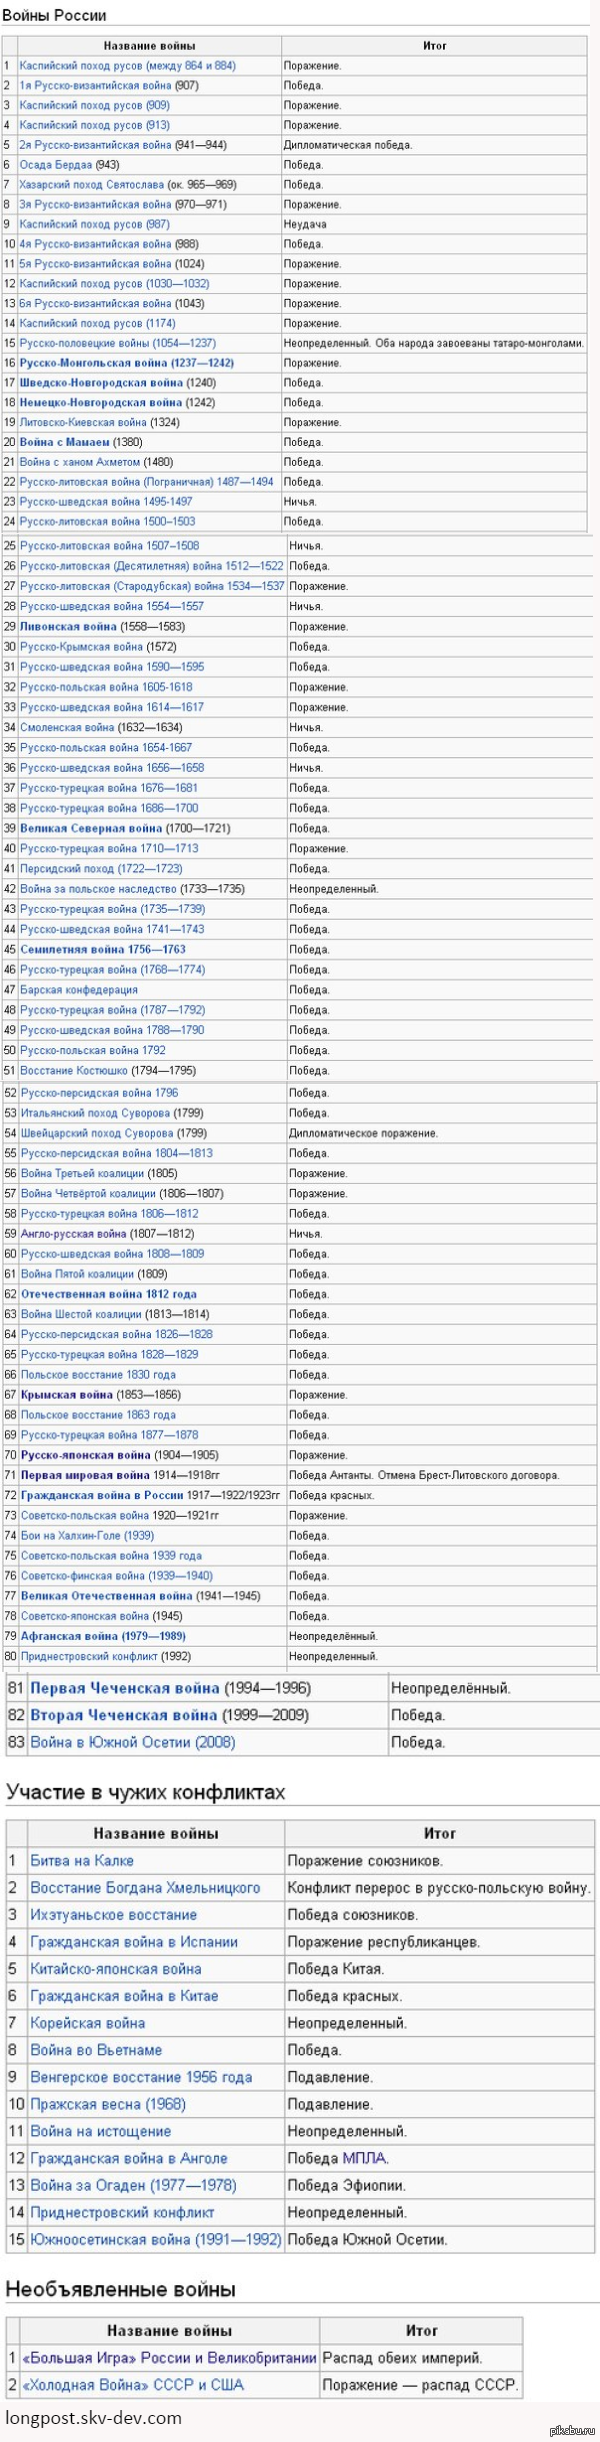 Список войн России | Пикабу